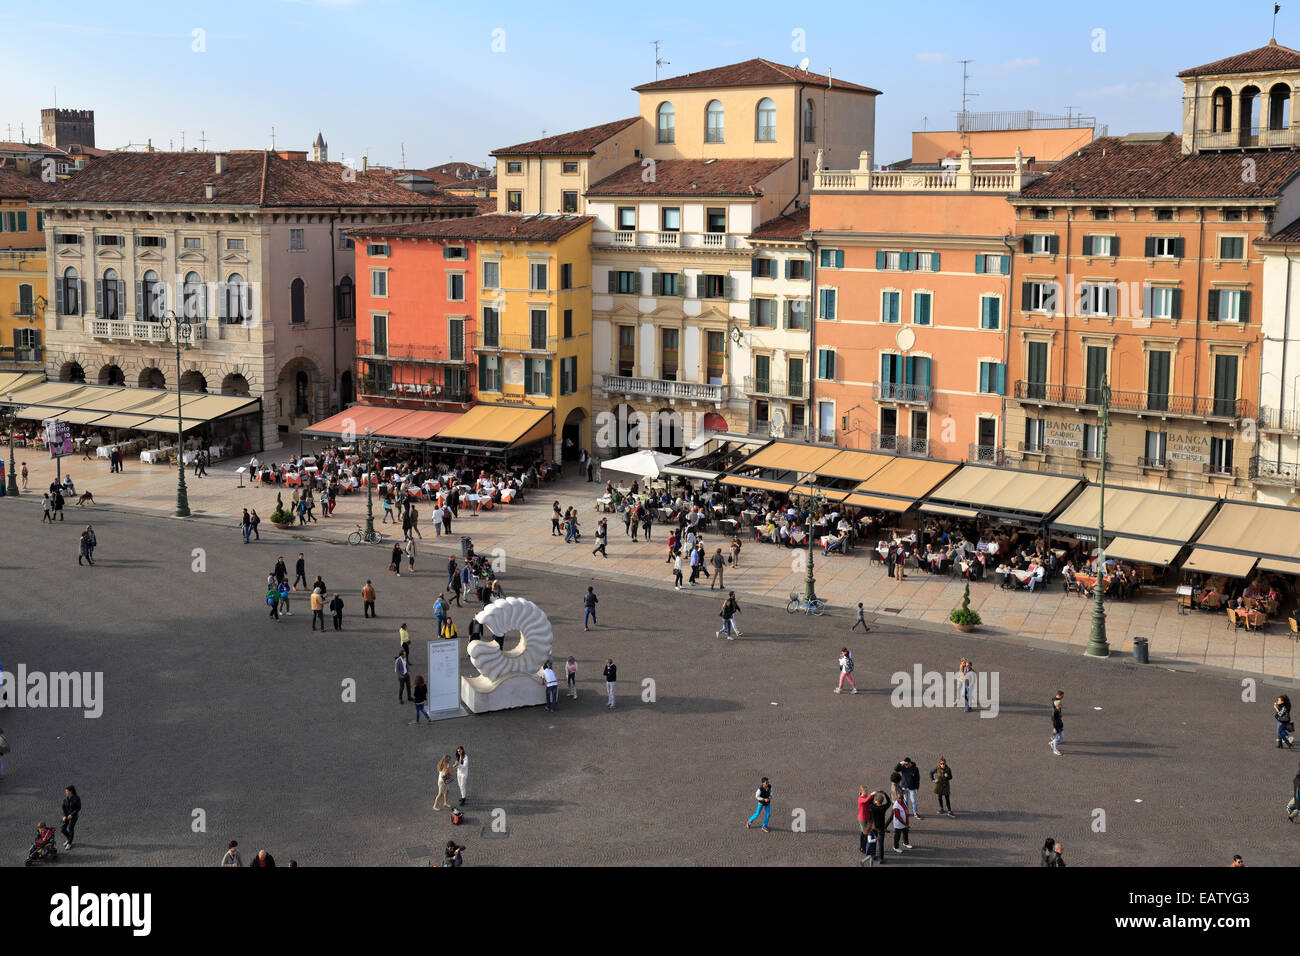 Piazza Bra from the Arena, Verona, Italy, Veneto. Stock Photo